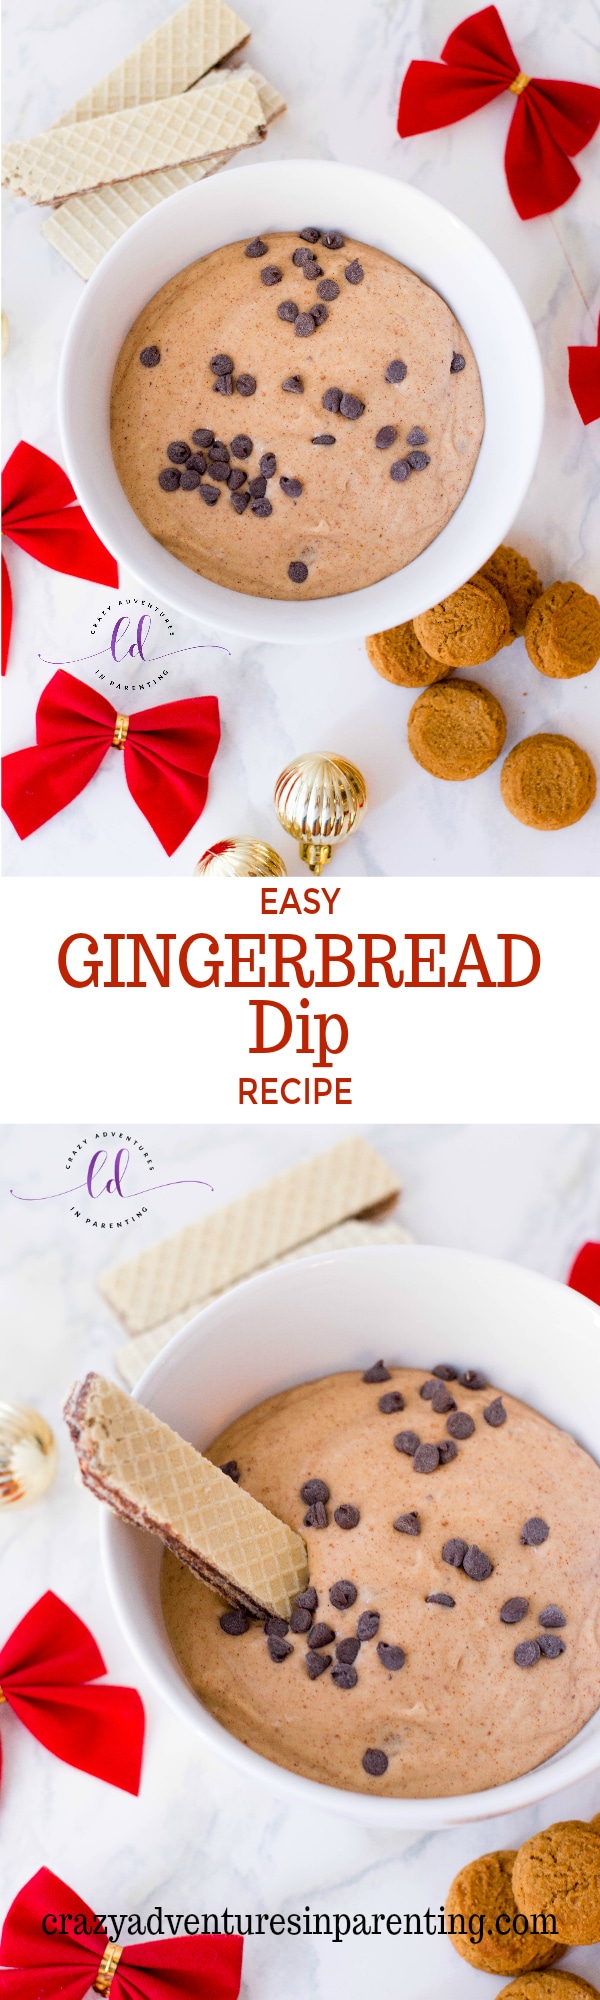 Easy Gingerbread Dip Recipe